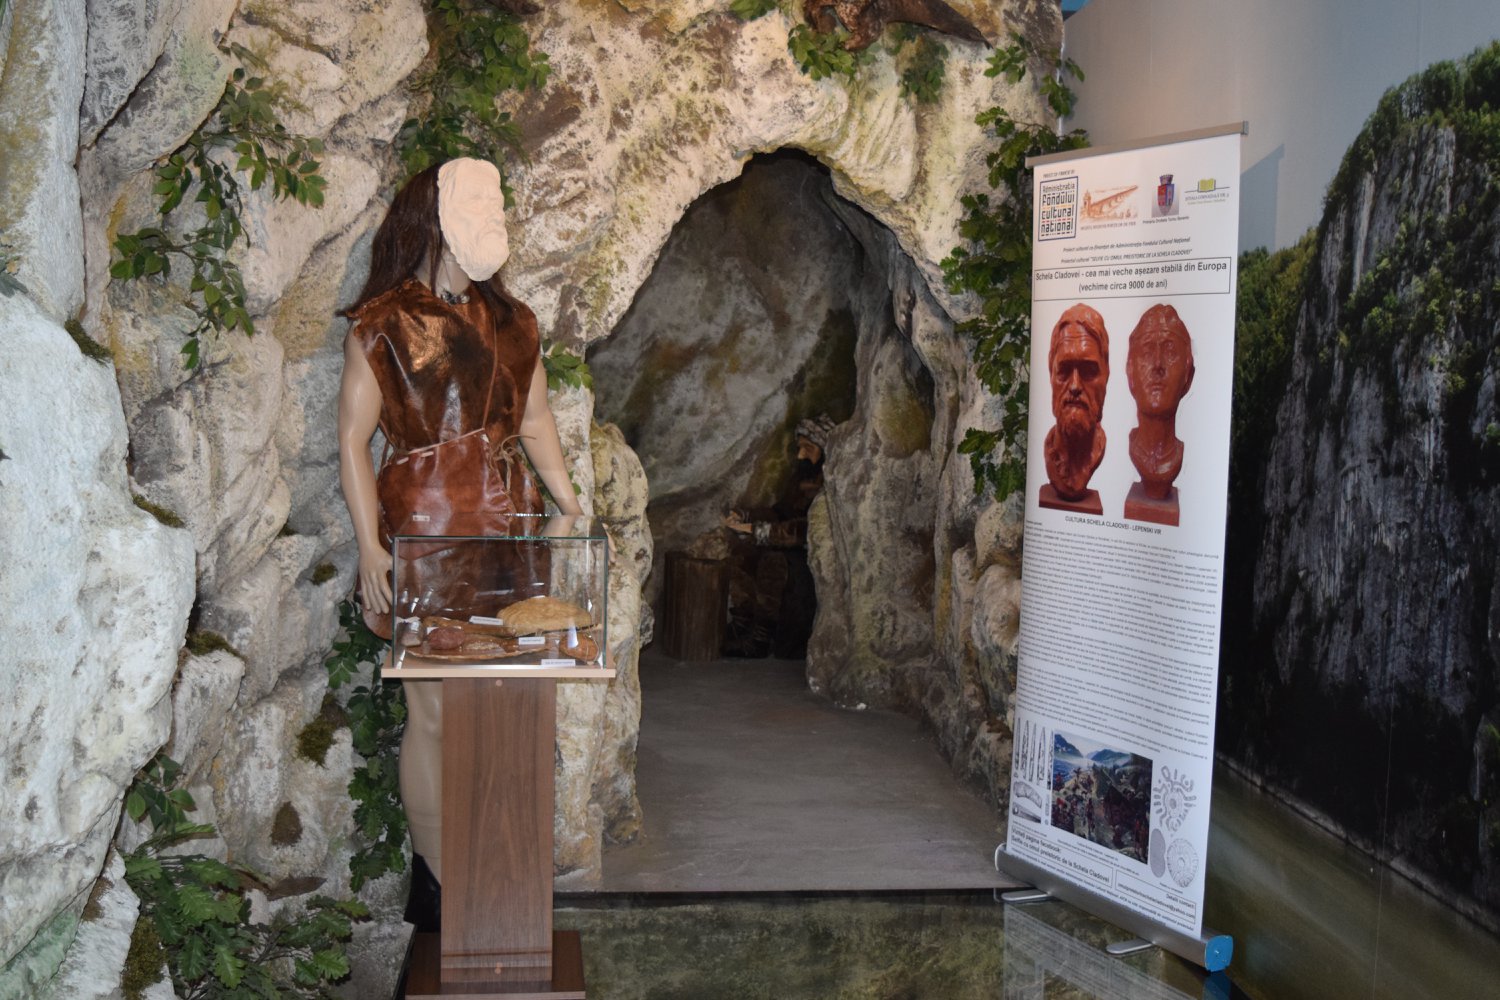 Cea mai veche așezare umană stabilă din Europa. Se află în România